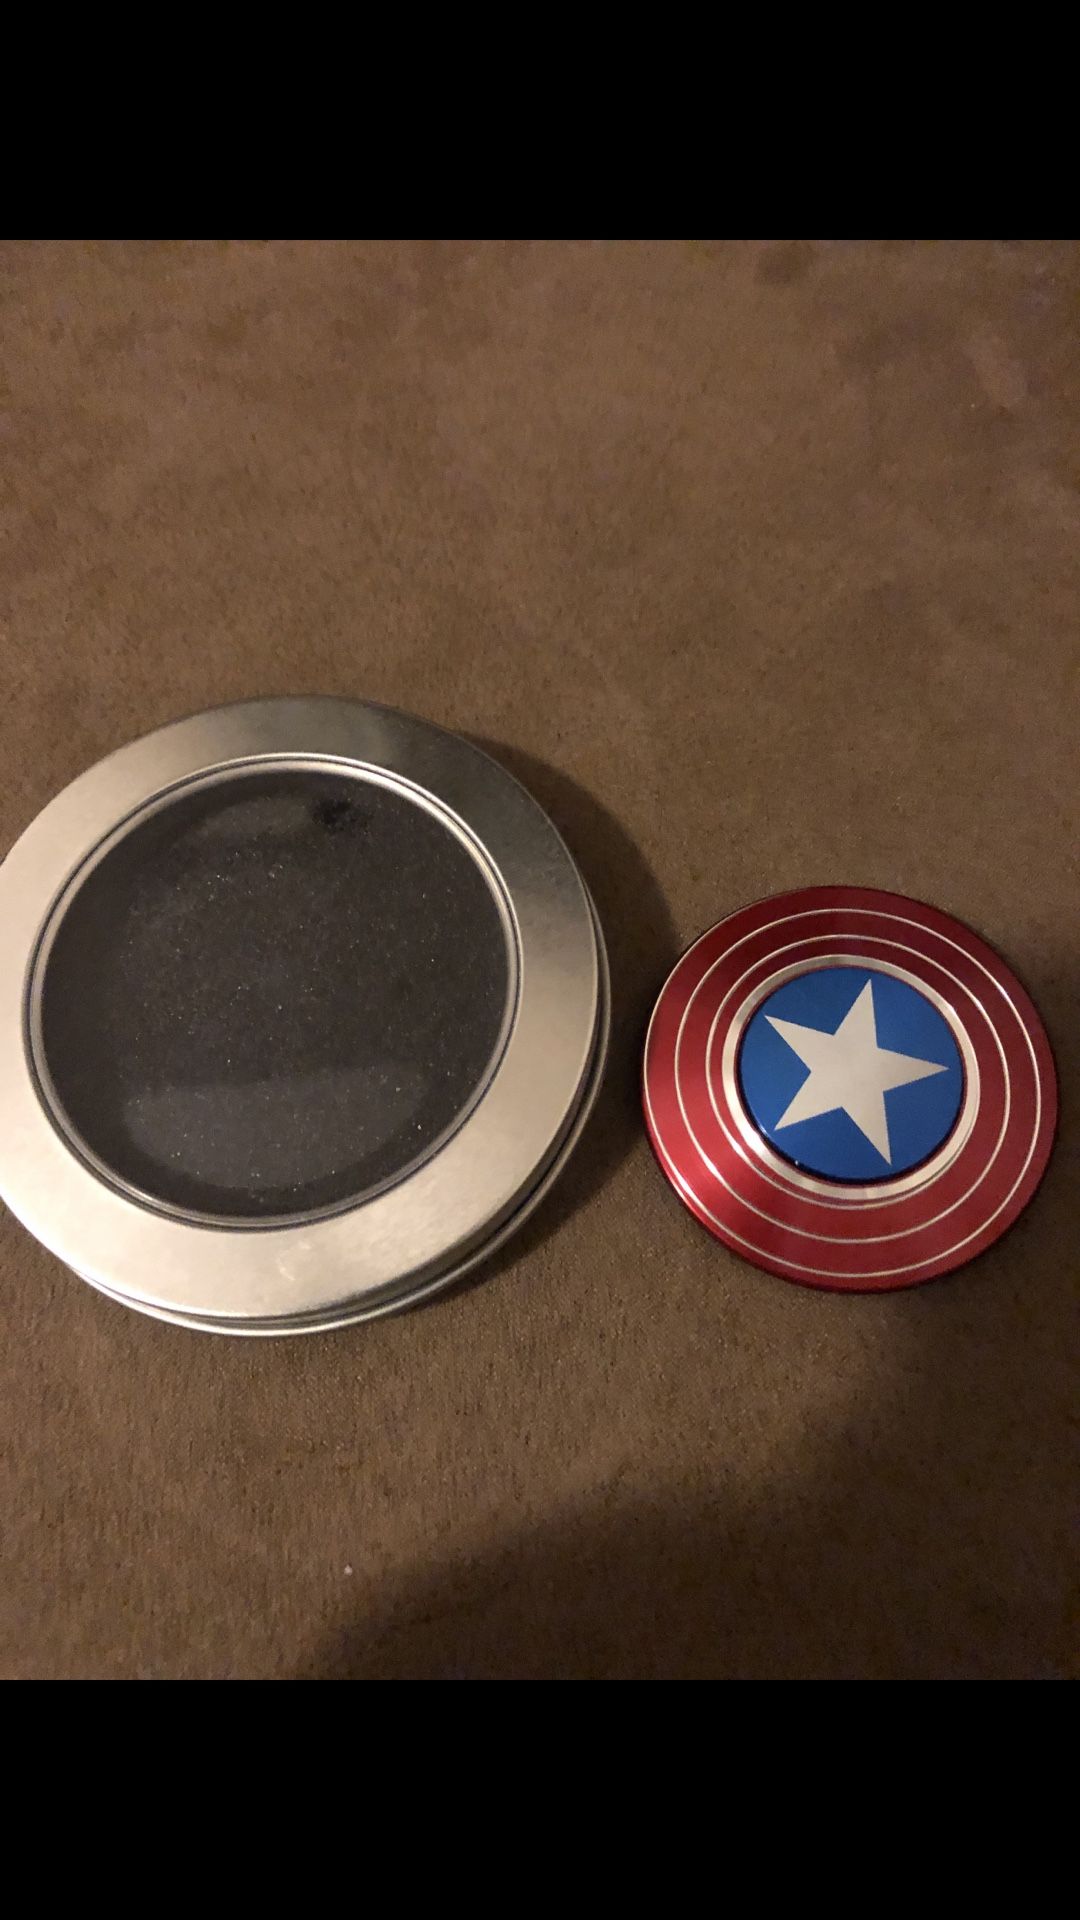 Captain America fidget spinner